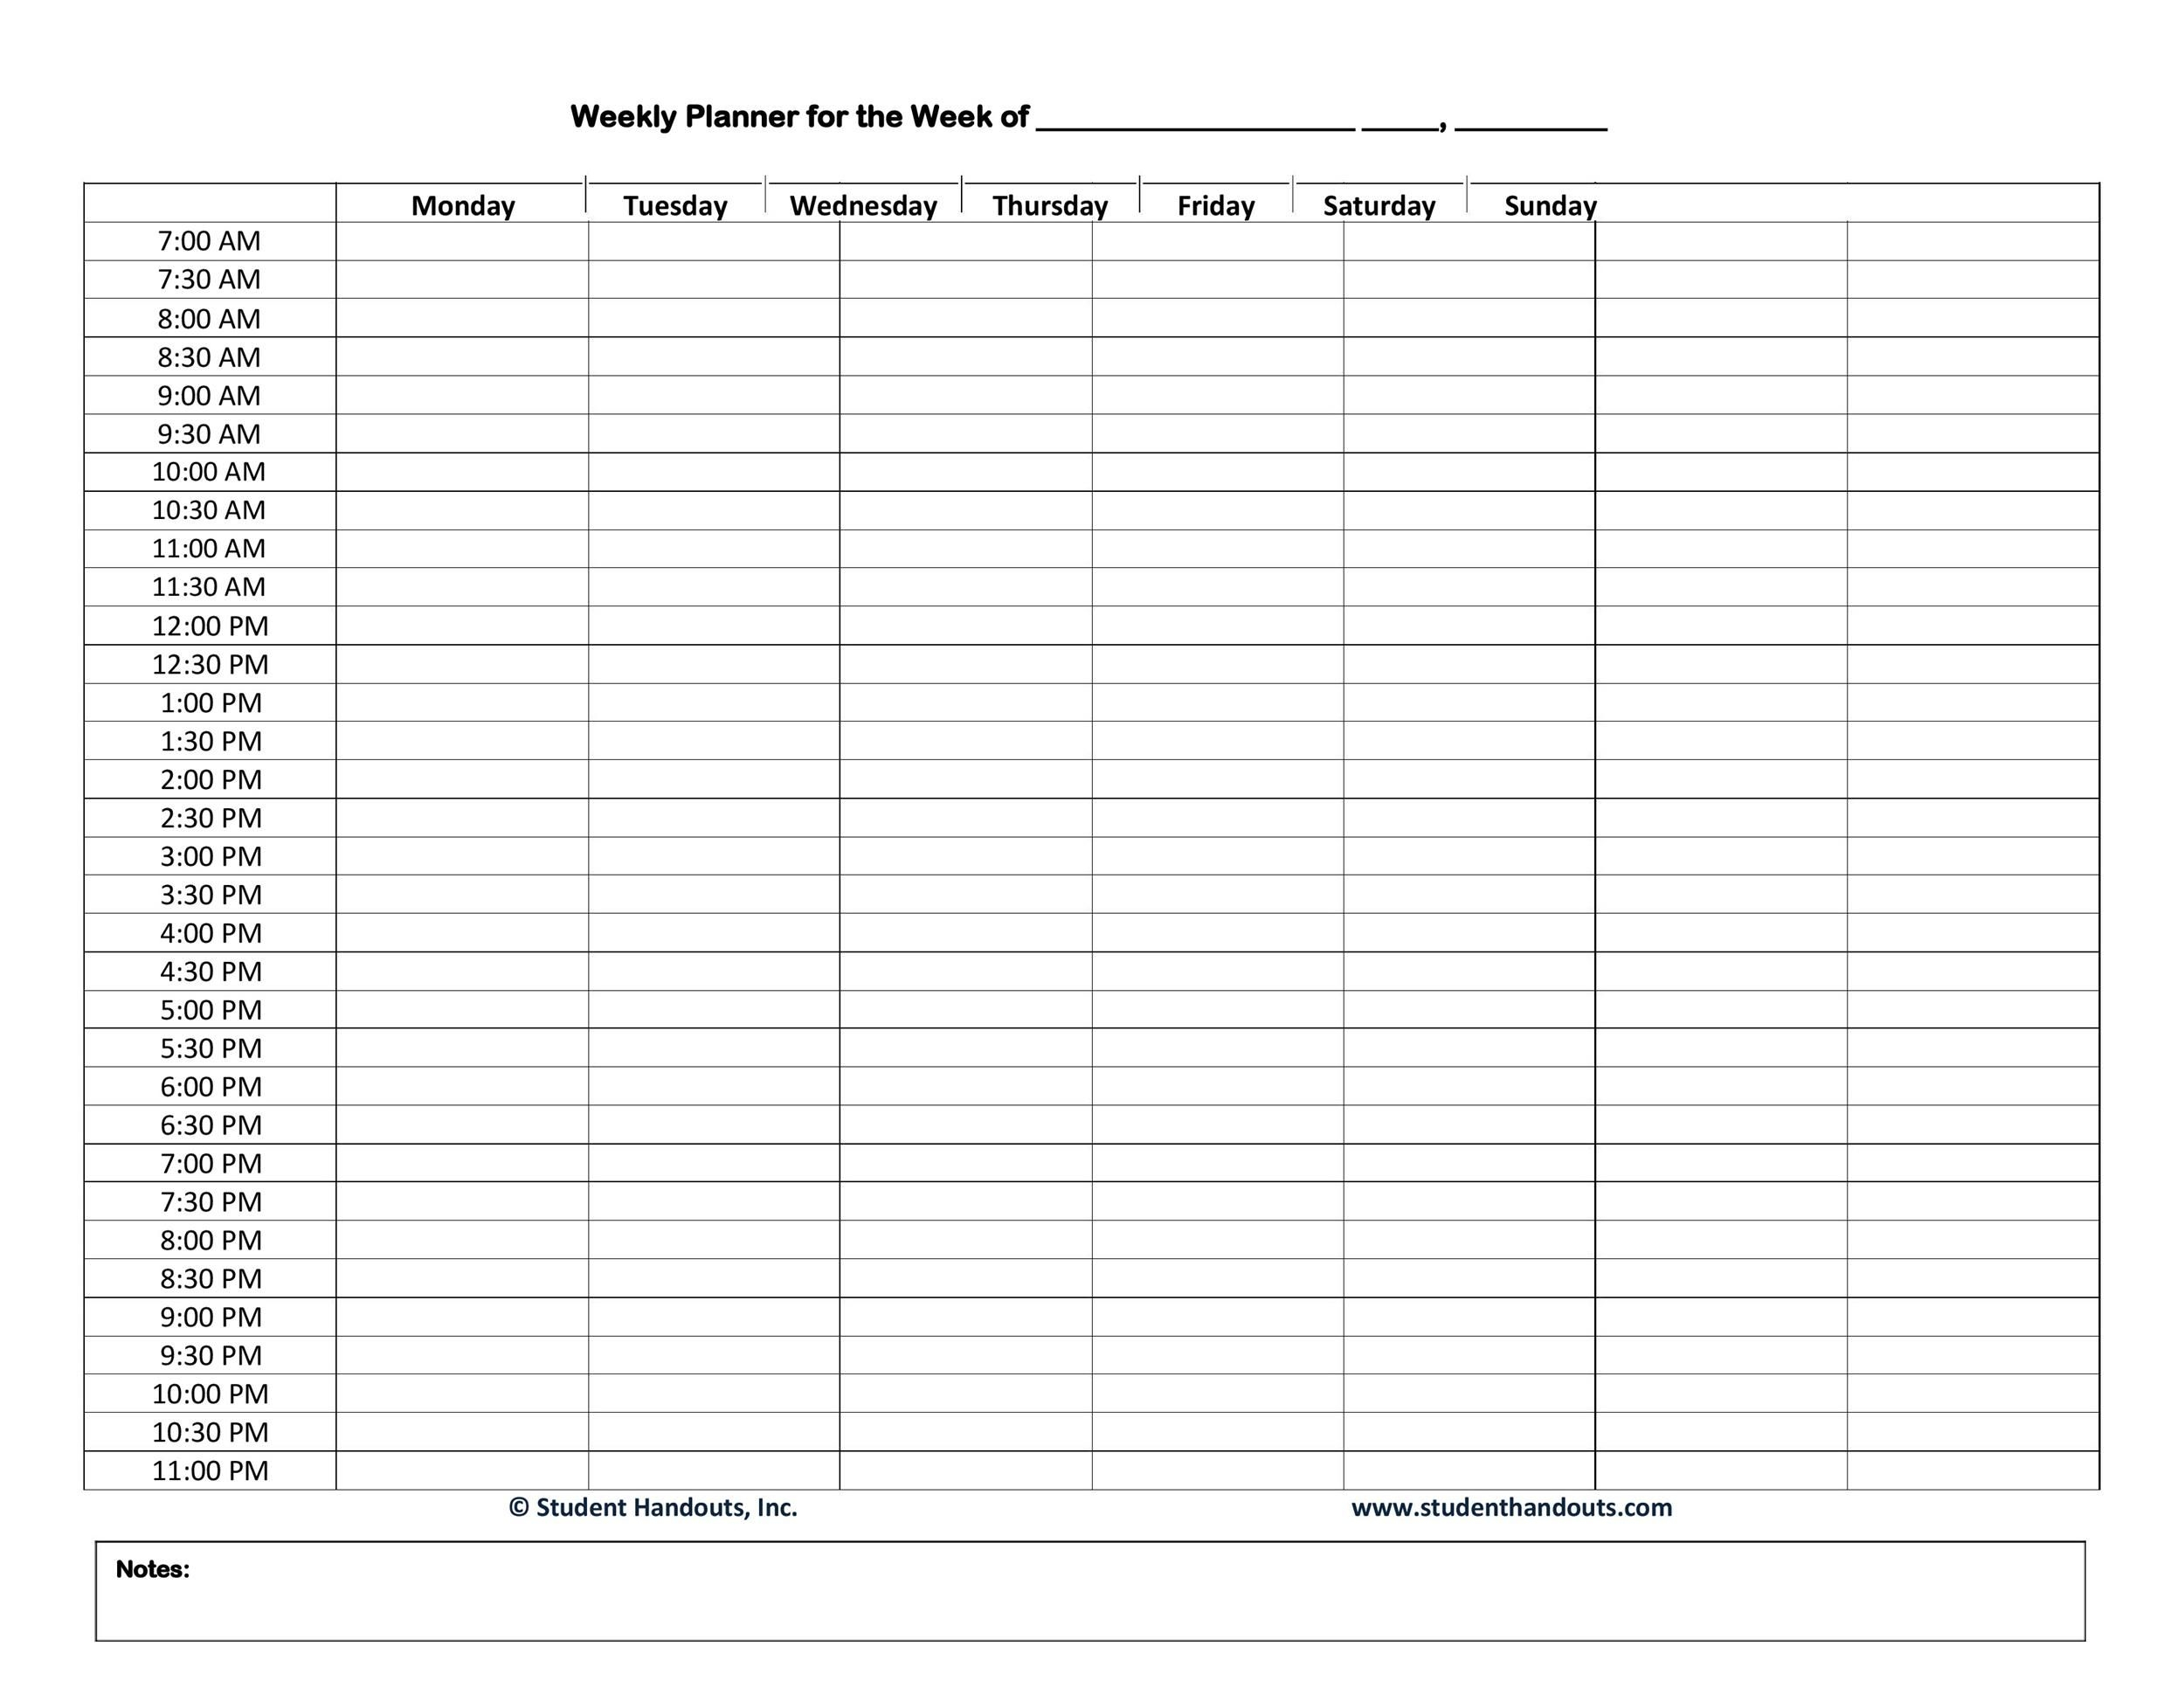 30 Minute Weekly Schedule Printable - Example Calendar